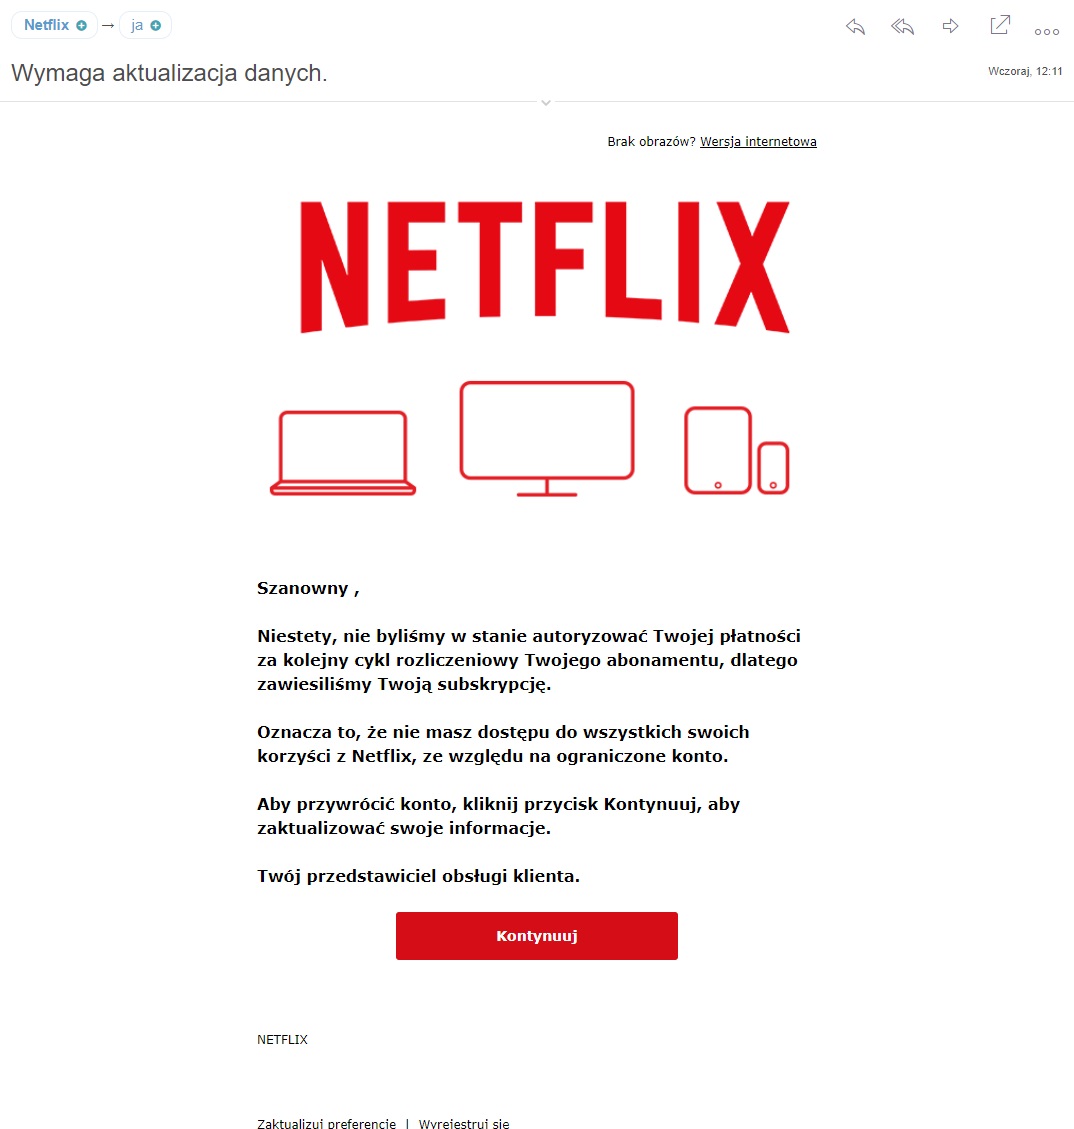 Fałśzywy mail "od Netflixa" (fot. Katarzyna Pura / Oiot.pl)